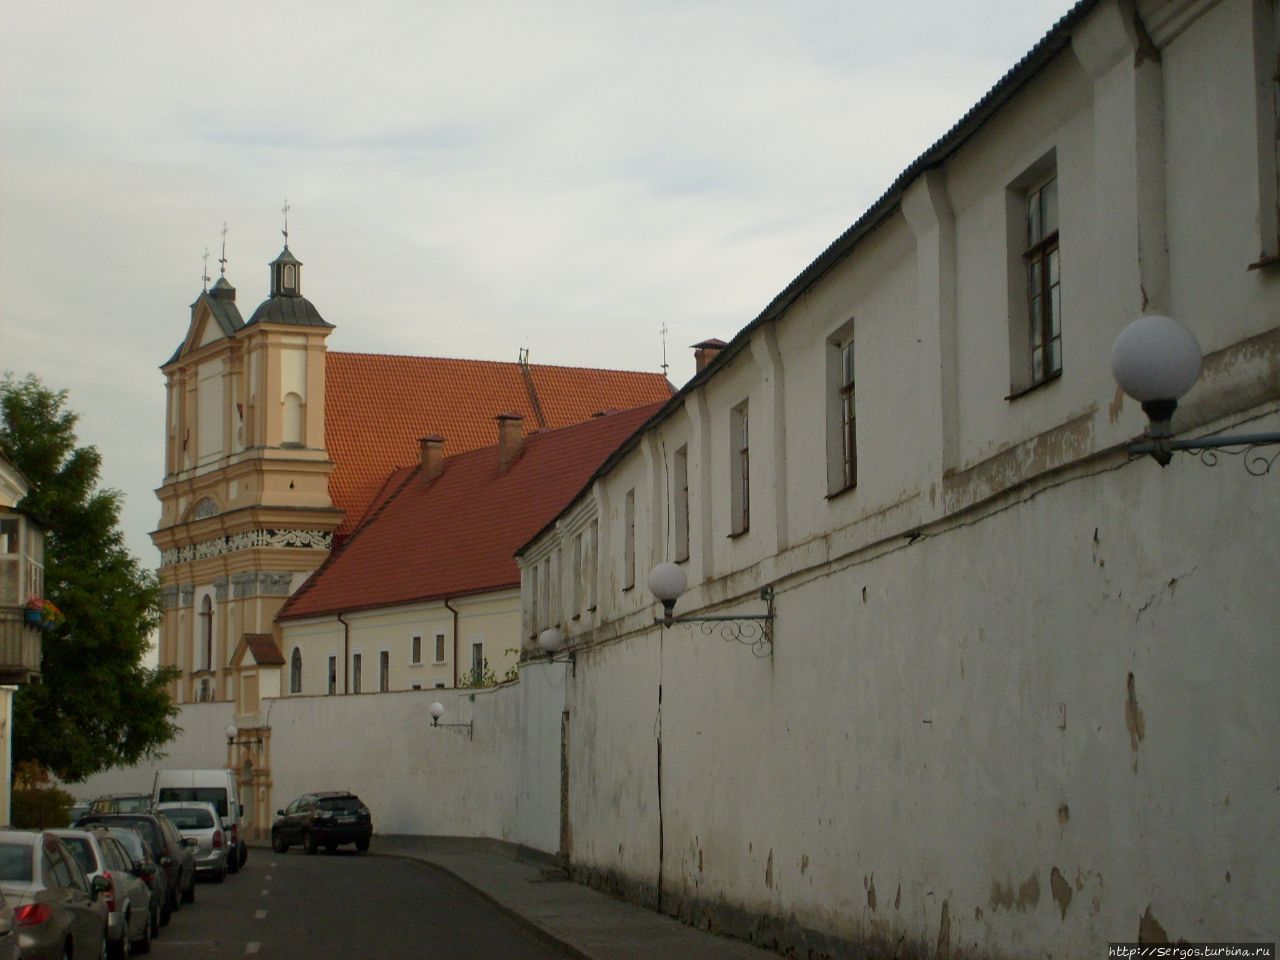 Бригитский монаст. (1634-42гг.) занимает целый квартал небольшого Гродно Беларусь